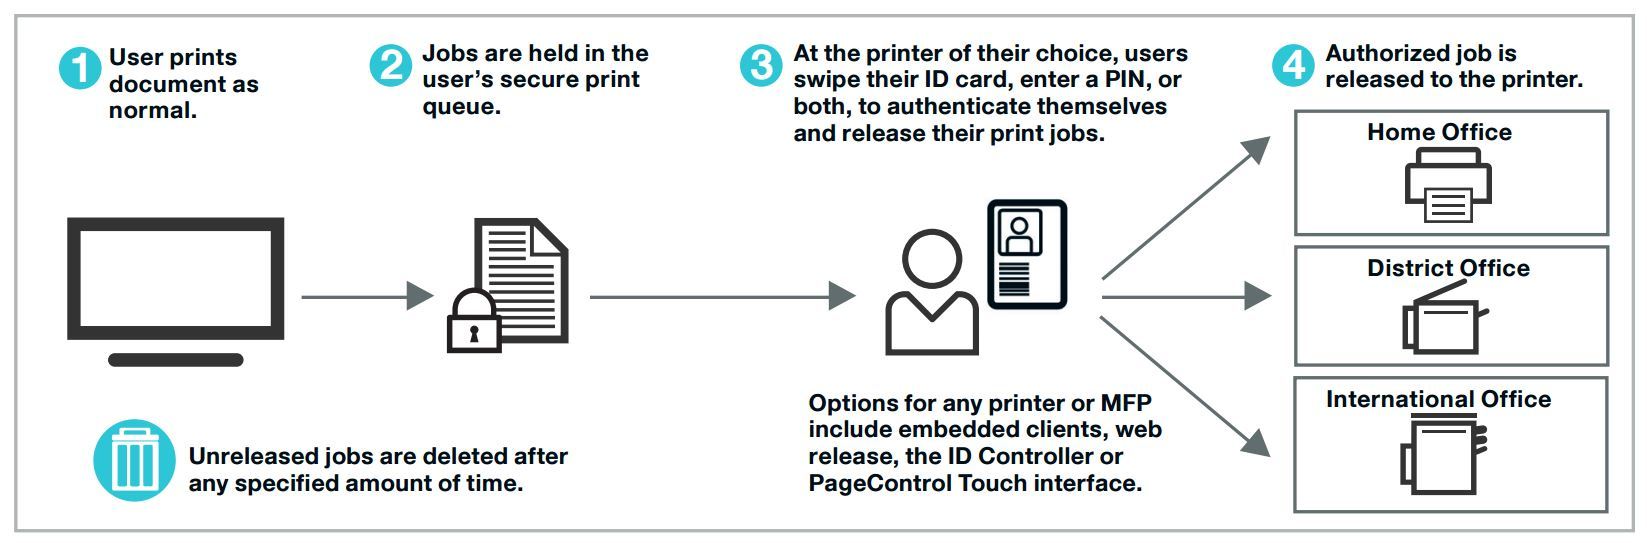 Принтер — находка для шпиона. Как сделать печать в компании безопасным и экономичным процессом - 6